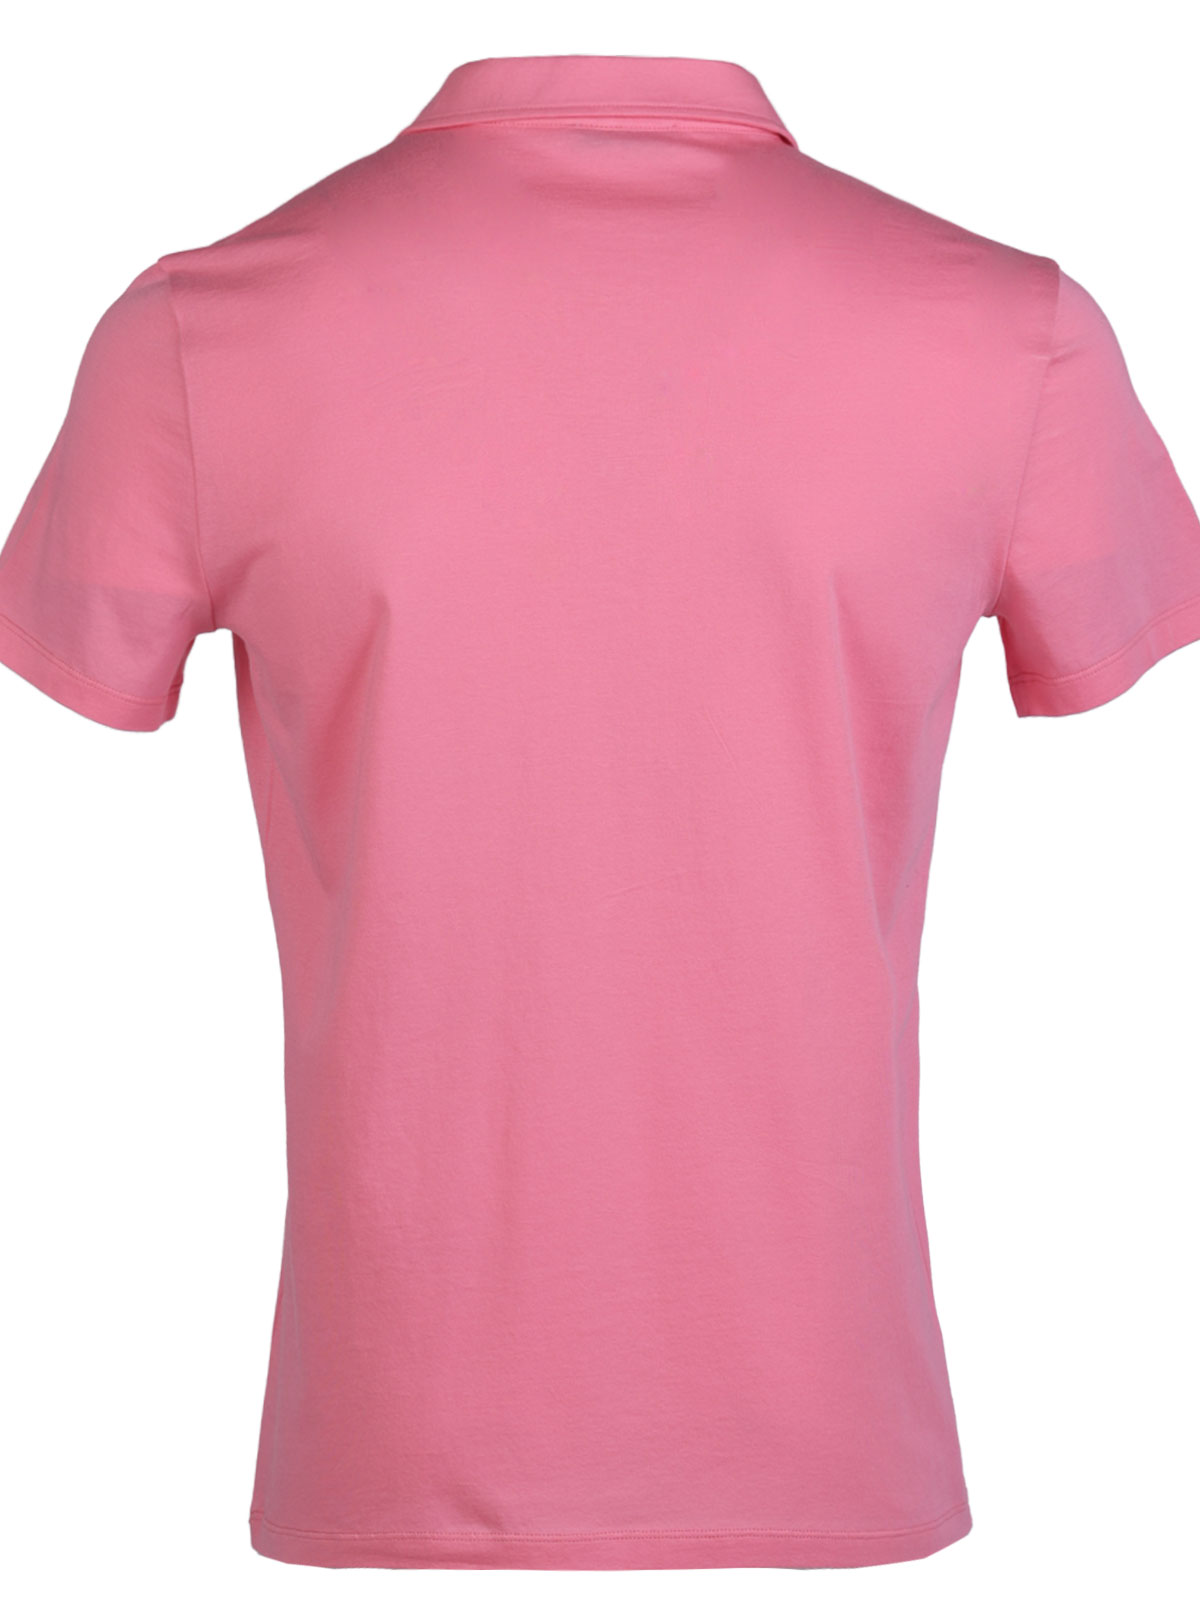 Μπλουζάκι σε ροζ χρώμα με γιακά - 94418 € 33.18 img2